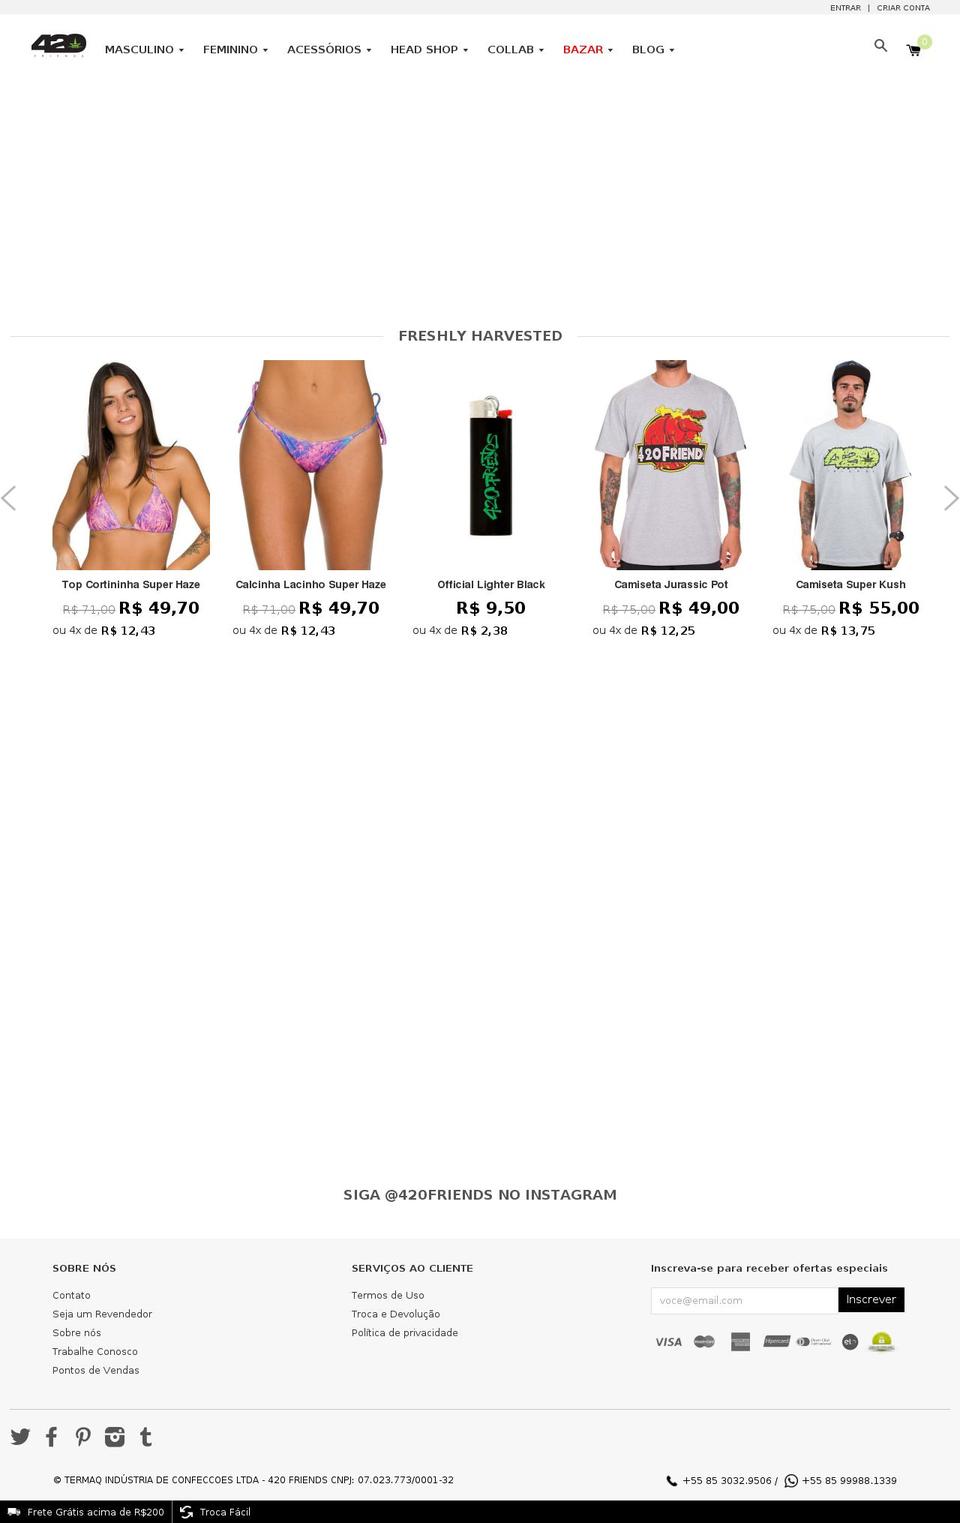 420friends.com.br shopify website screenshot